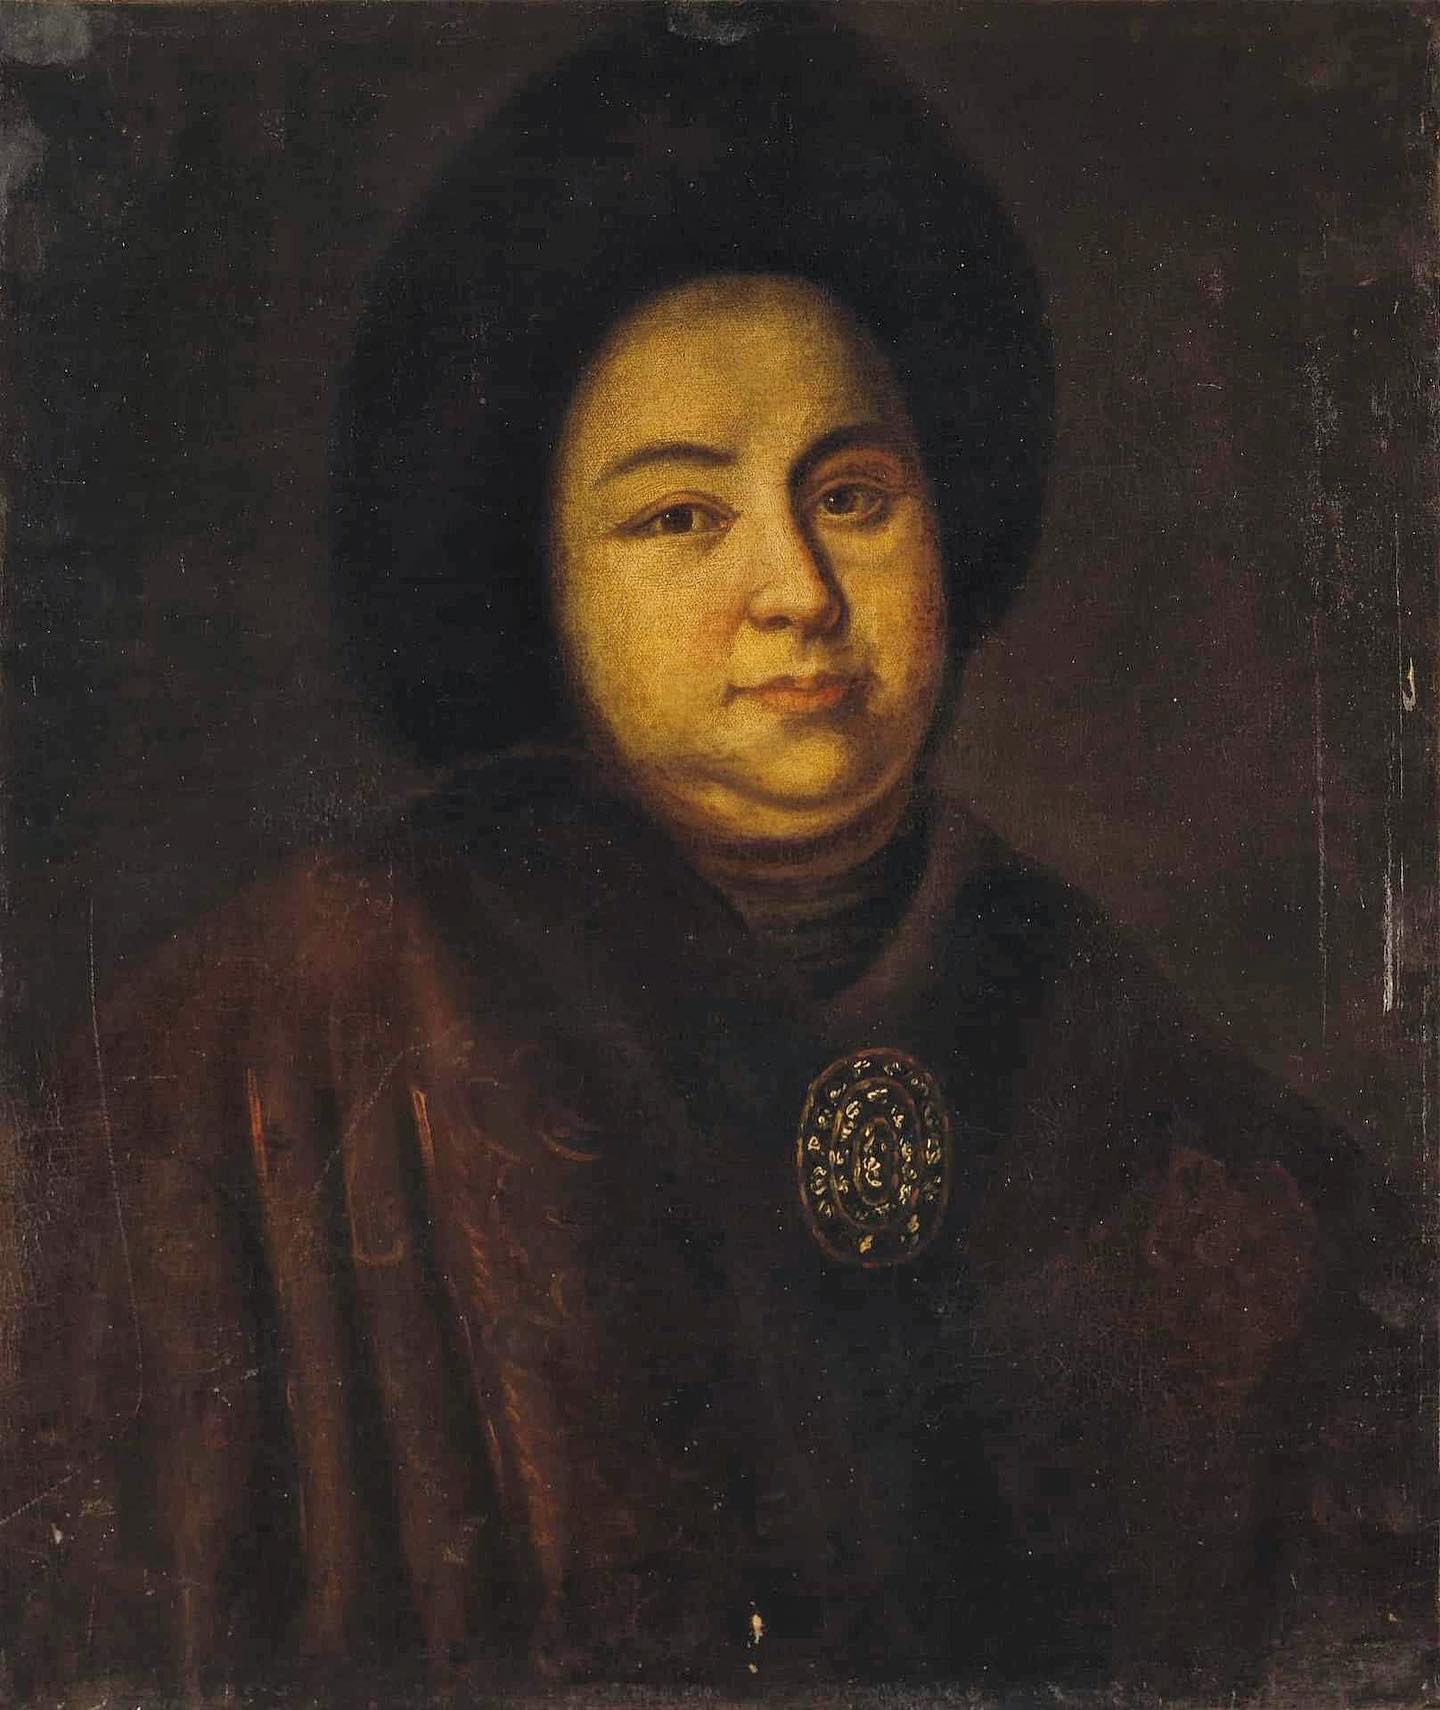 Evdokia Lopukhina em pintura do século 18. Autor desconhecido.